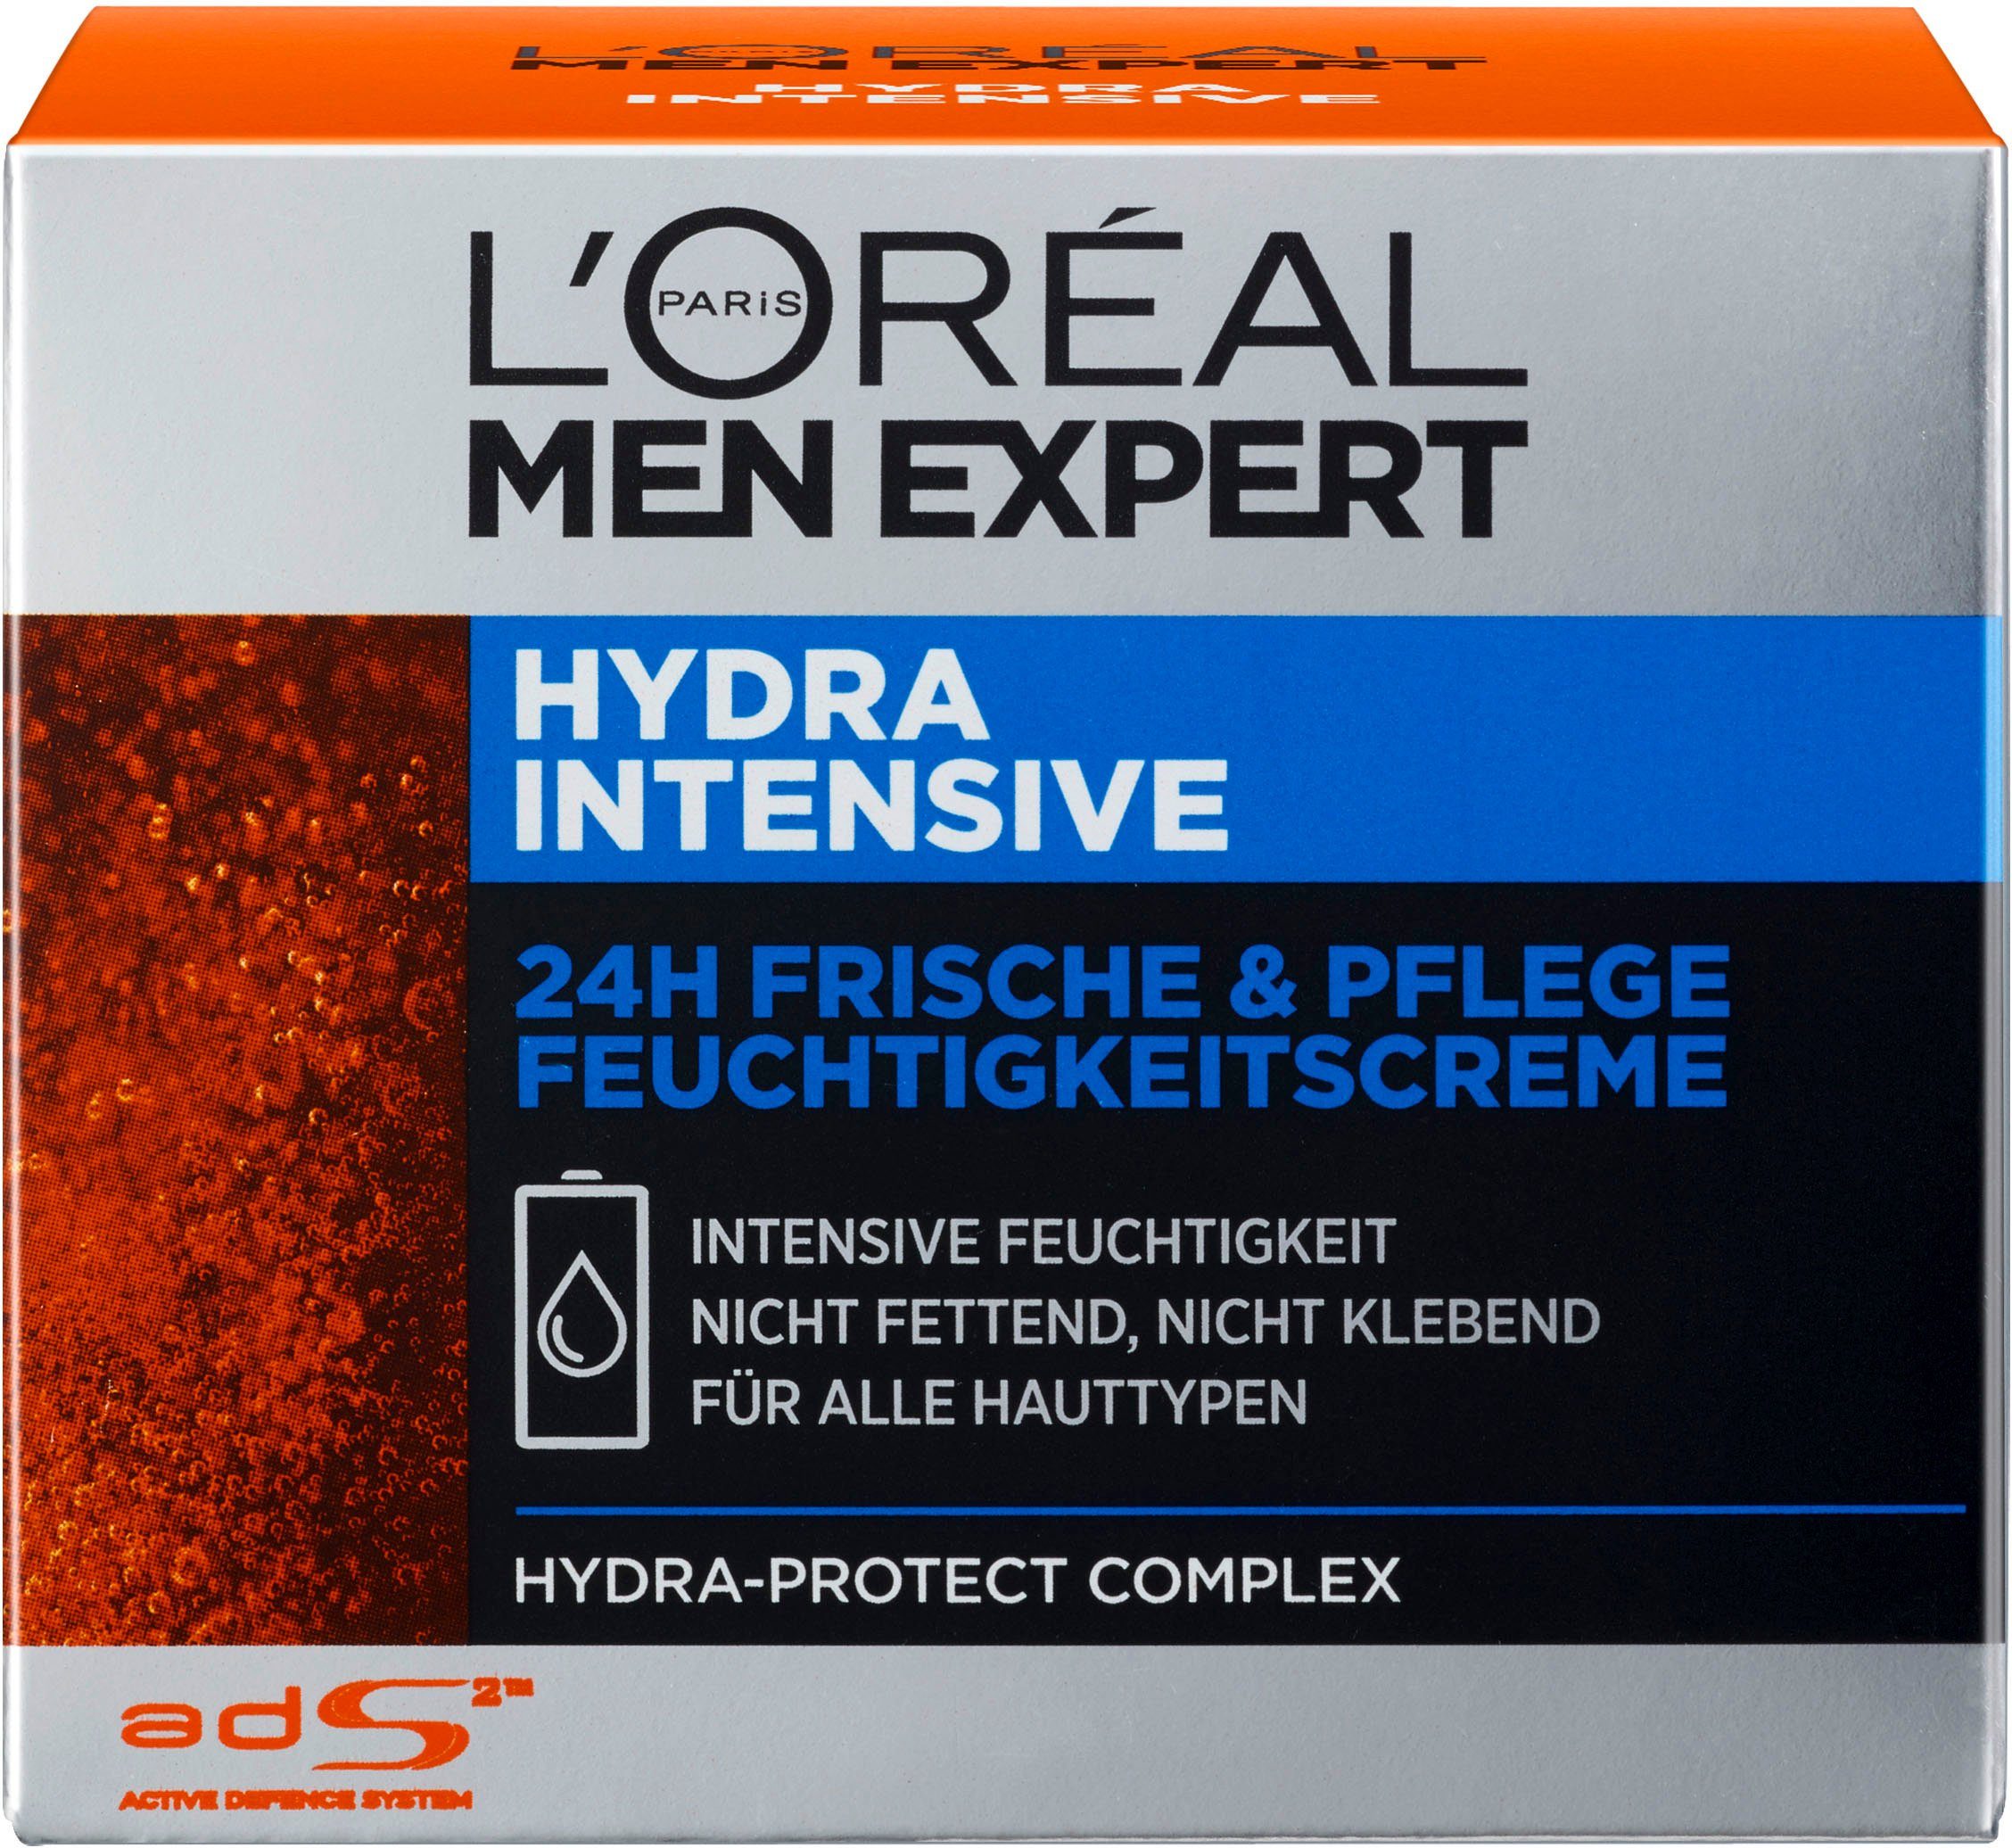 L'ORÉAL PARIS MEN EXPERT ohne sensible Intensive, zieht für ein schnell, Männerhaut; fetten Hydra Feuchtigkeitscreme